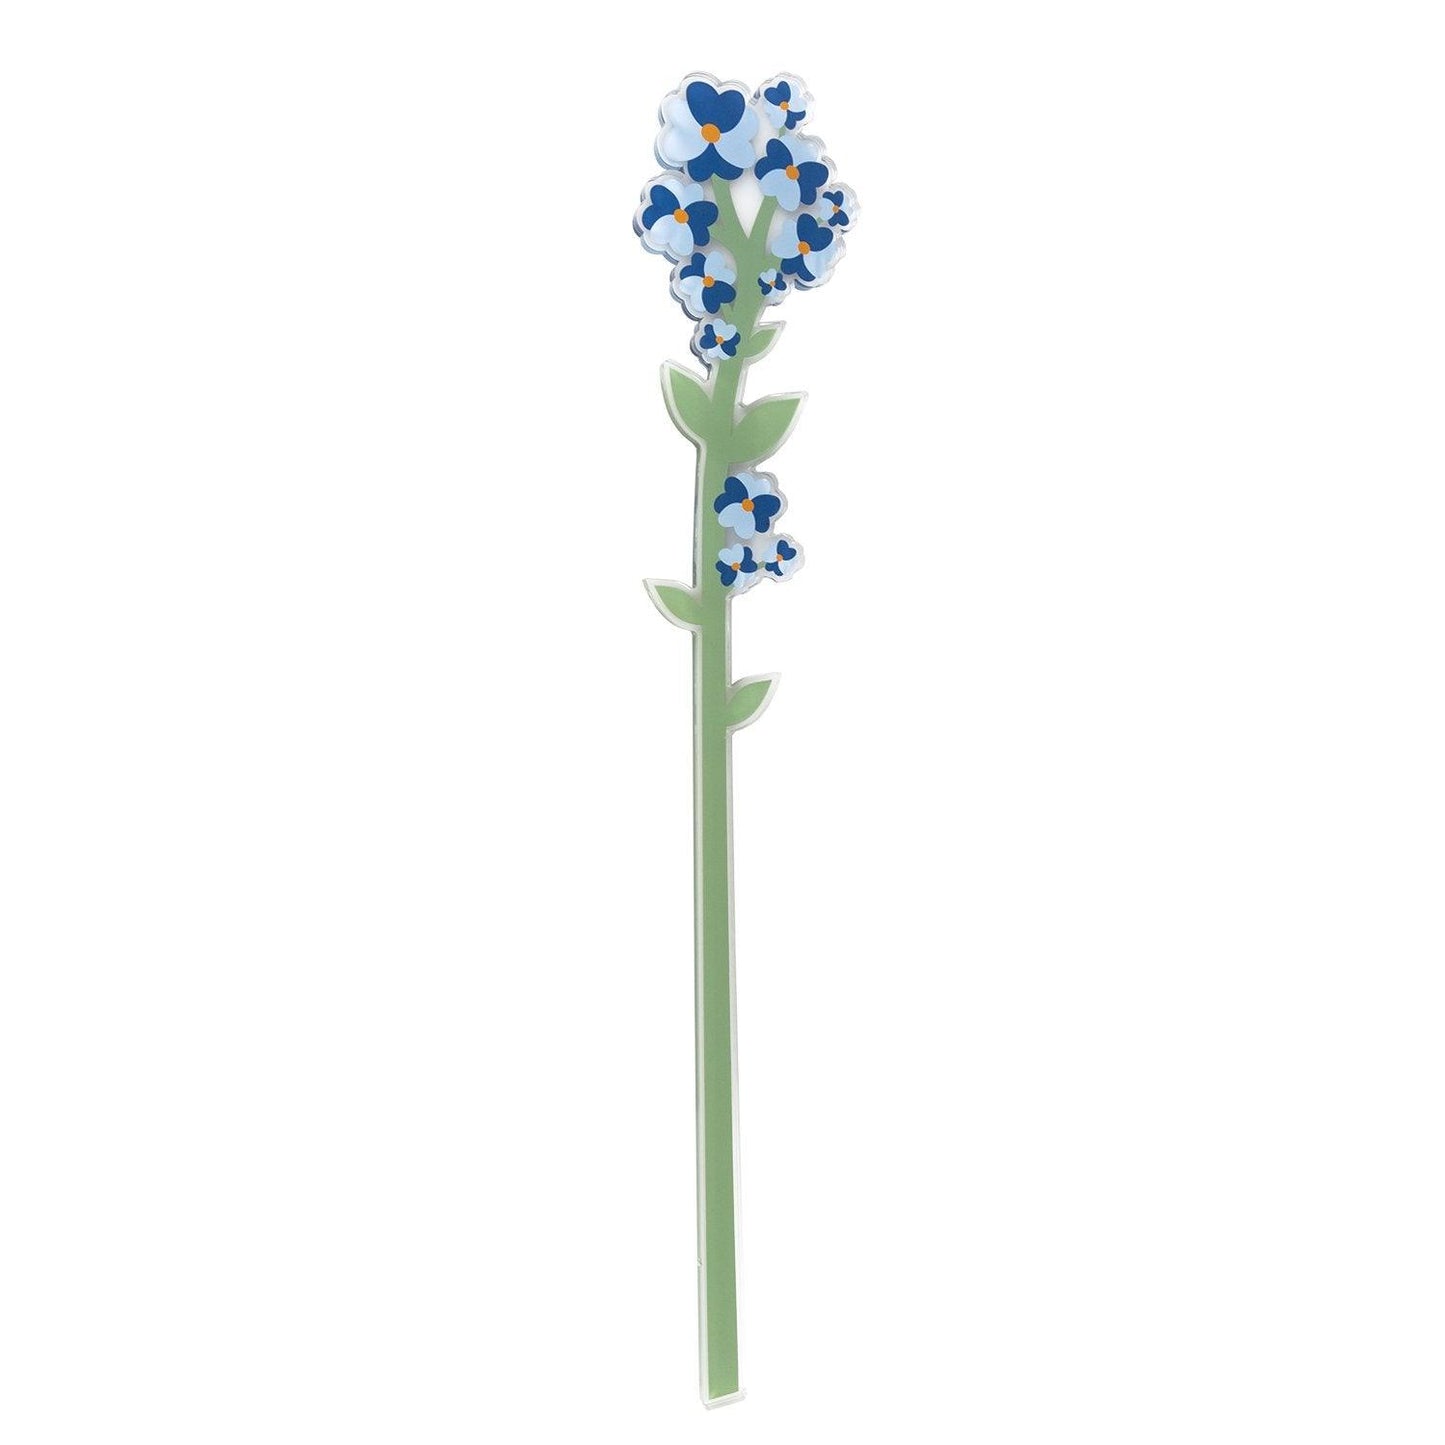 Vesta Funny Flower in cristallo acrilico - Nontiscordardimé - MARIKA DE PAOLA - HOME DECOR